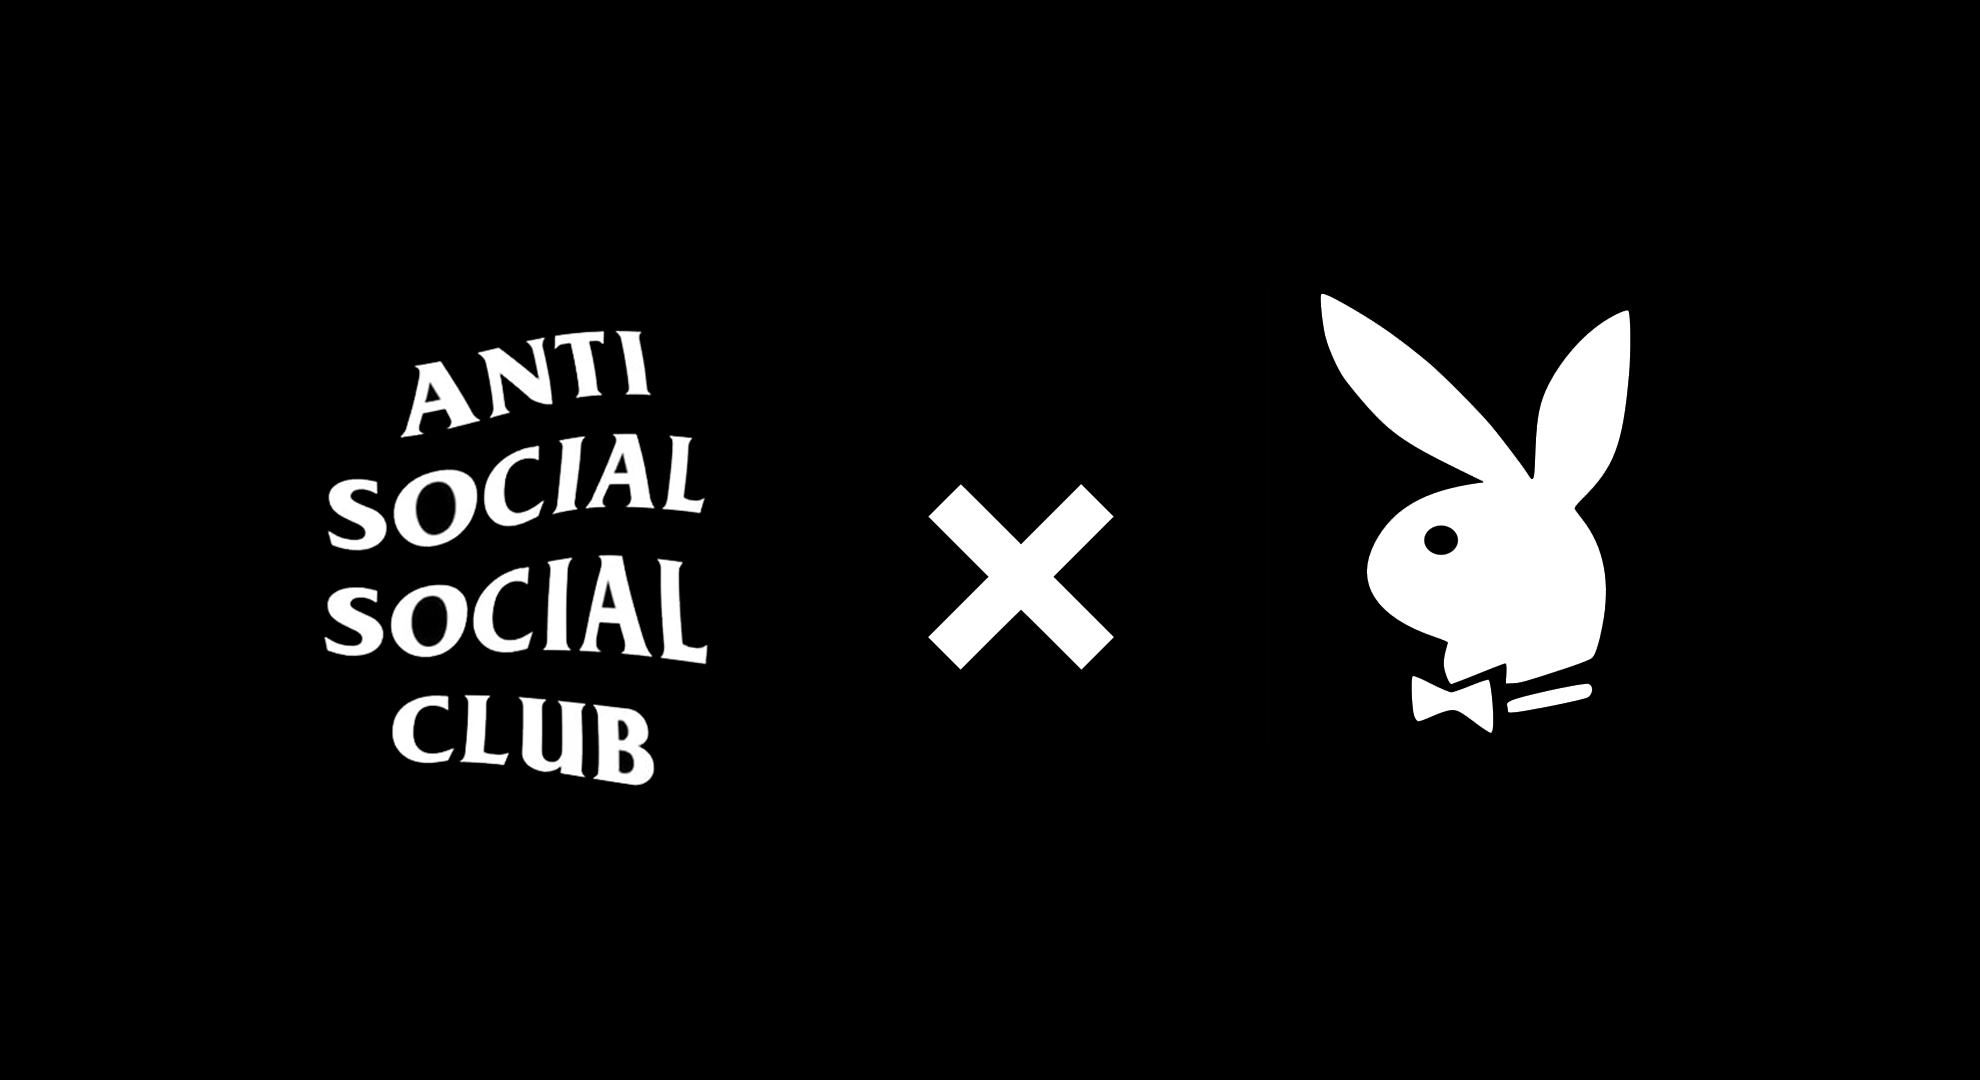 Anti Social Club Wallpaper Free Anti Social Club